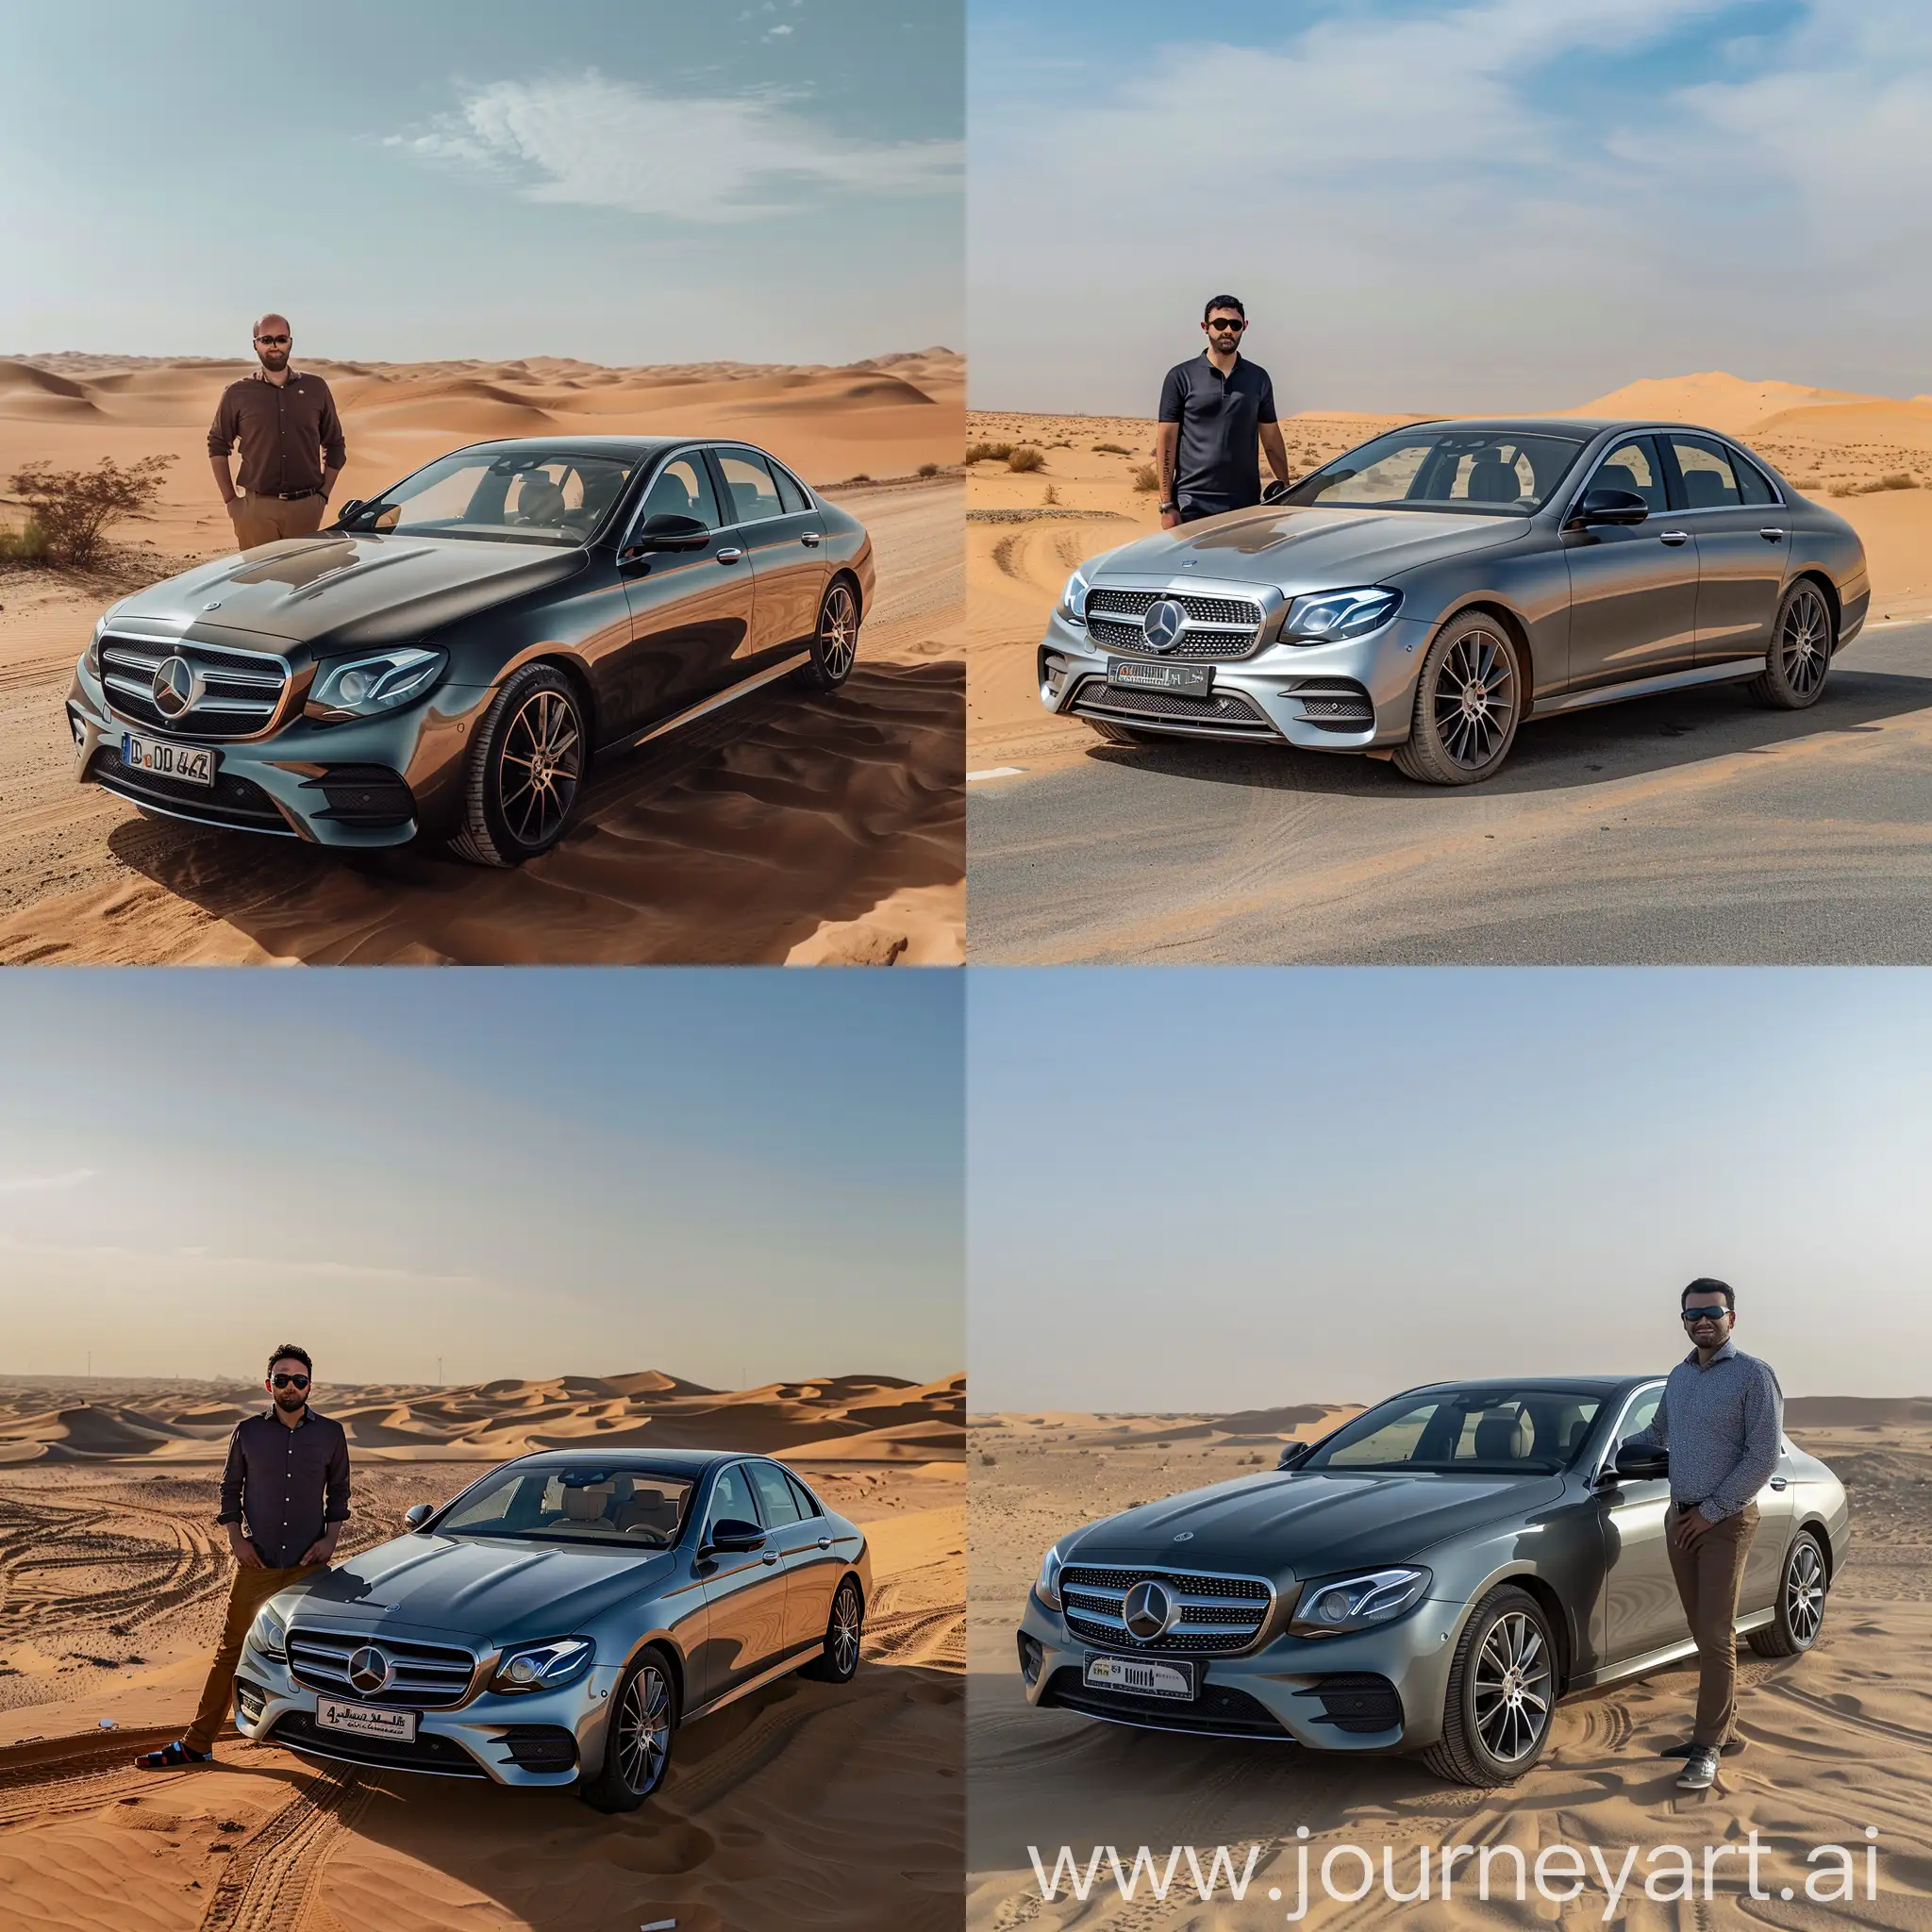 Man-Standing-Next-to-Mercedes-EClass-in-Desert-near-Dubai